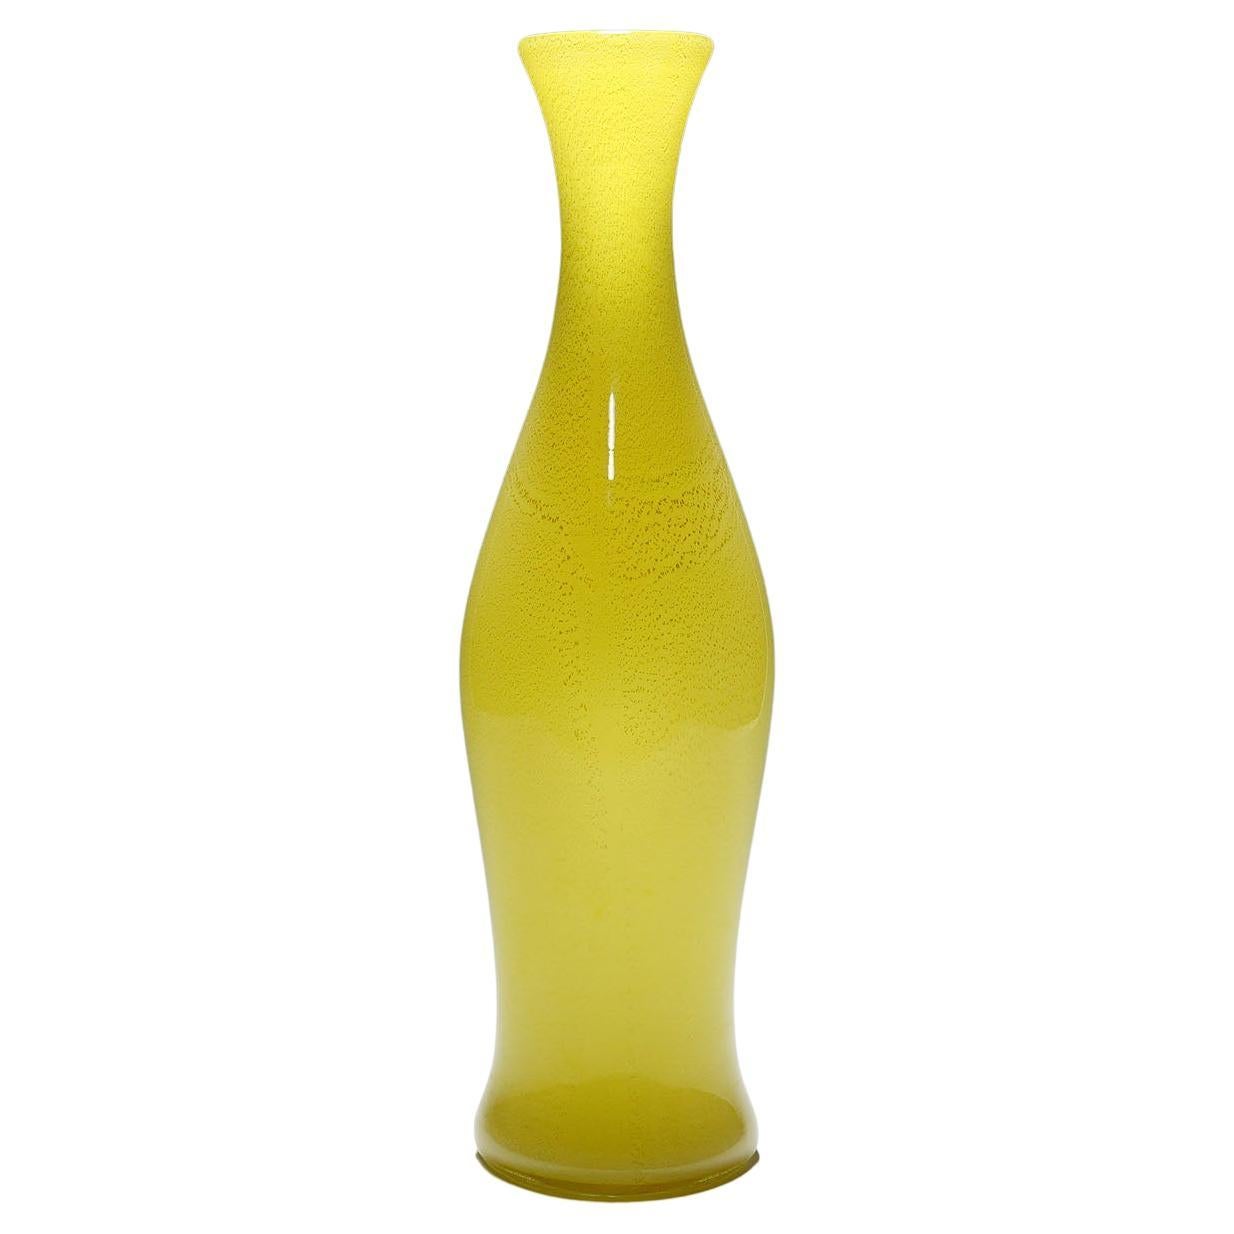 Grand vase en verre Soffiato de Galliano Ferro, Murano, vers les années 1950